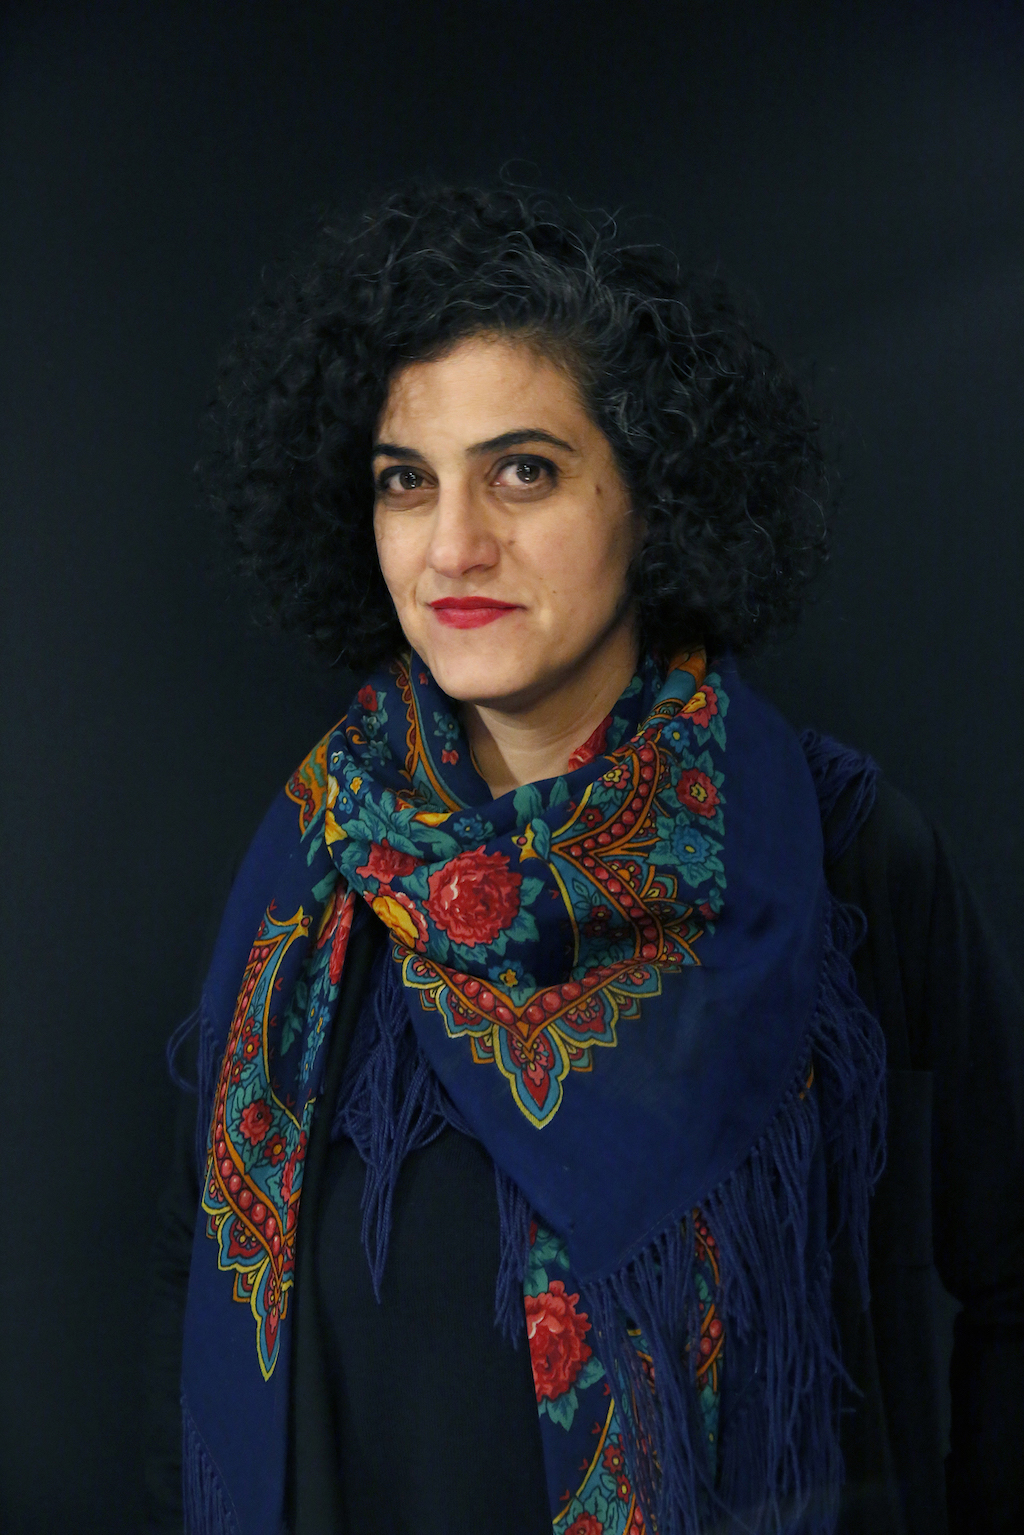 Setareh Shahbazi portätiert von Ava Krebs